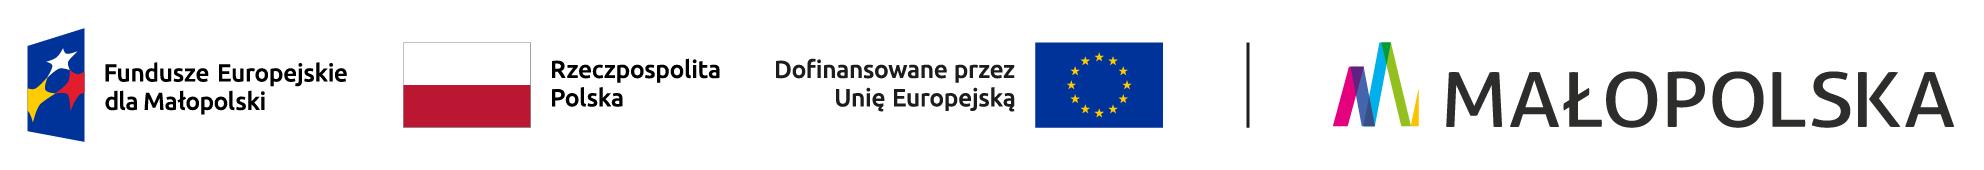 Zestawienie logotypów zawierające od lewej: znak Funduszy Europejskich z podpisem Fundusze Europejskie dla Małopolski, flaga Rzeczypospolitej Polskiej, flaga Unii Europejskiej z podpisem dofinansowane przez Unię Europejską oraz logotyp Województwa Małopolskiego.